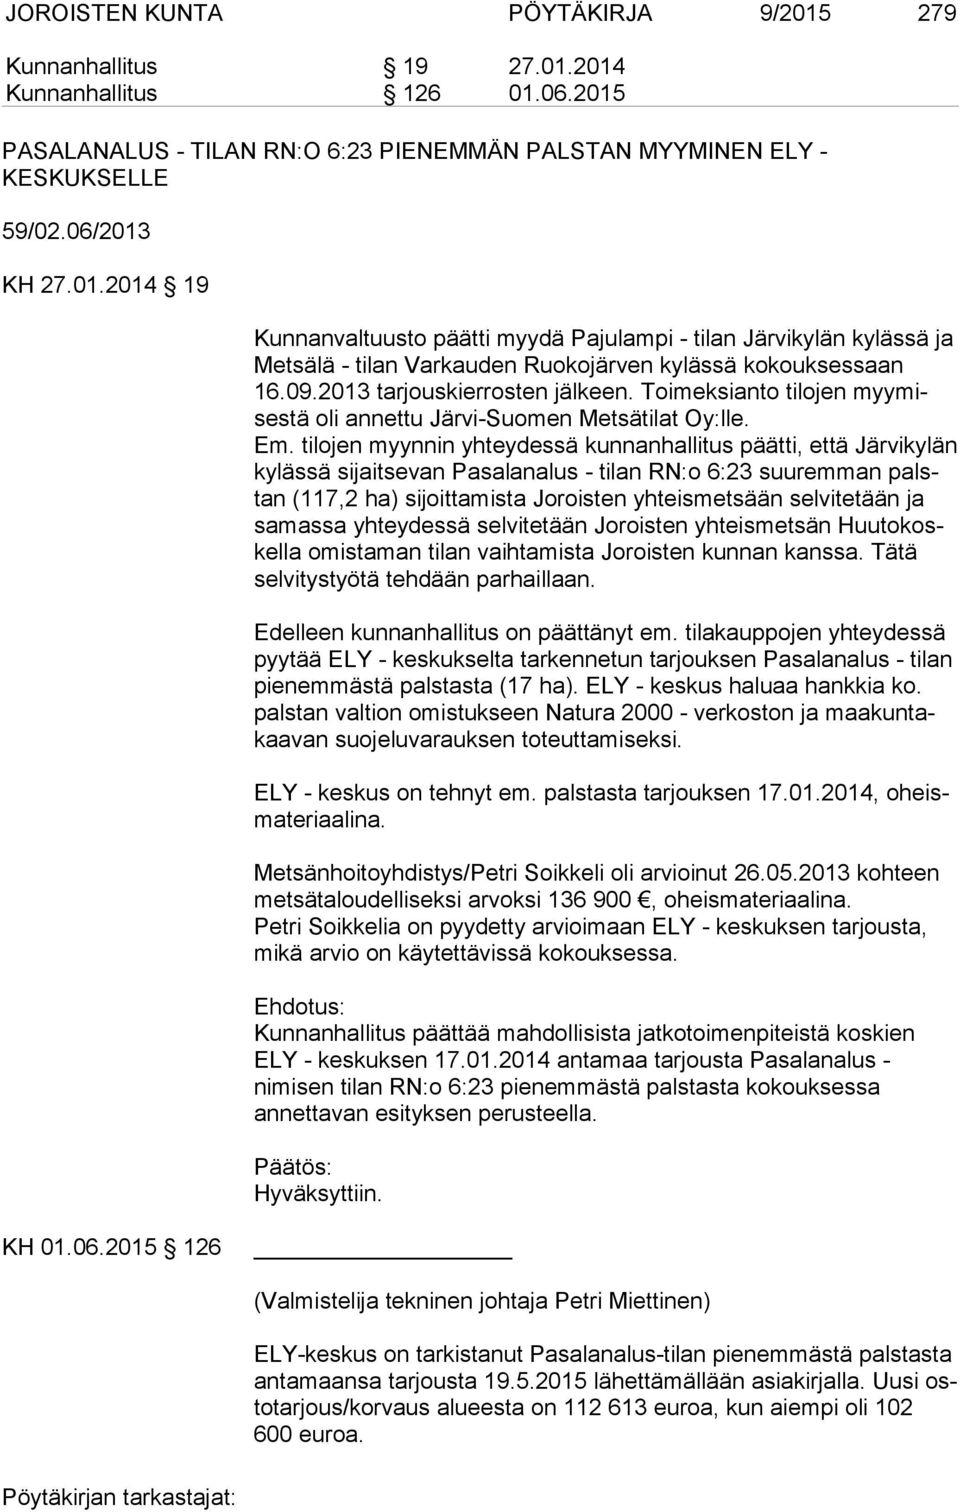 tilojen myynnin yhteydessä kunnanhallitus päätti, että Järvikylän ky läs sä sijaitsevan Pasalanalus - tilan RN:o 6:23 suuremman palstan (117,2 ha) sijoittamista Joroisten yhteismetsään selvitetään ja